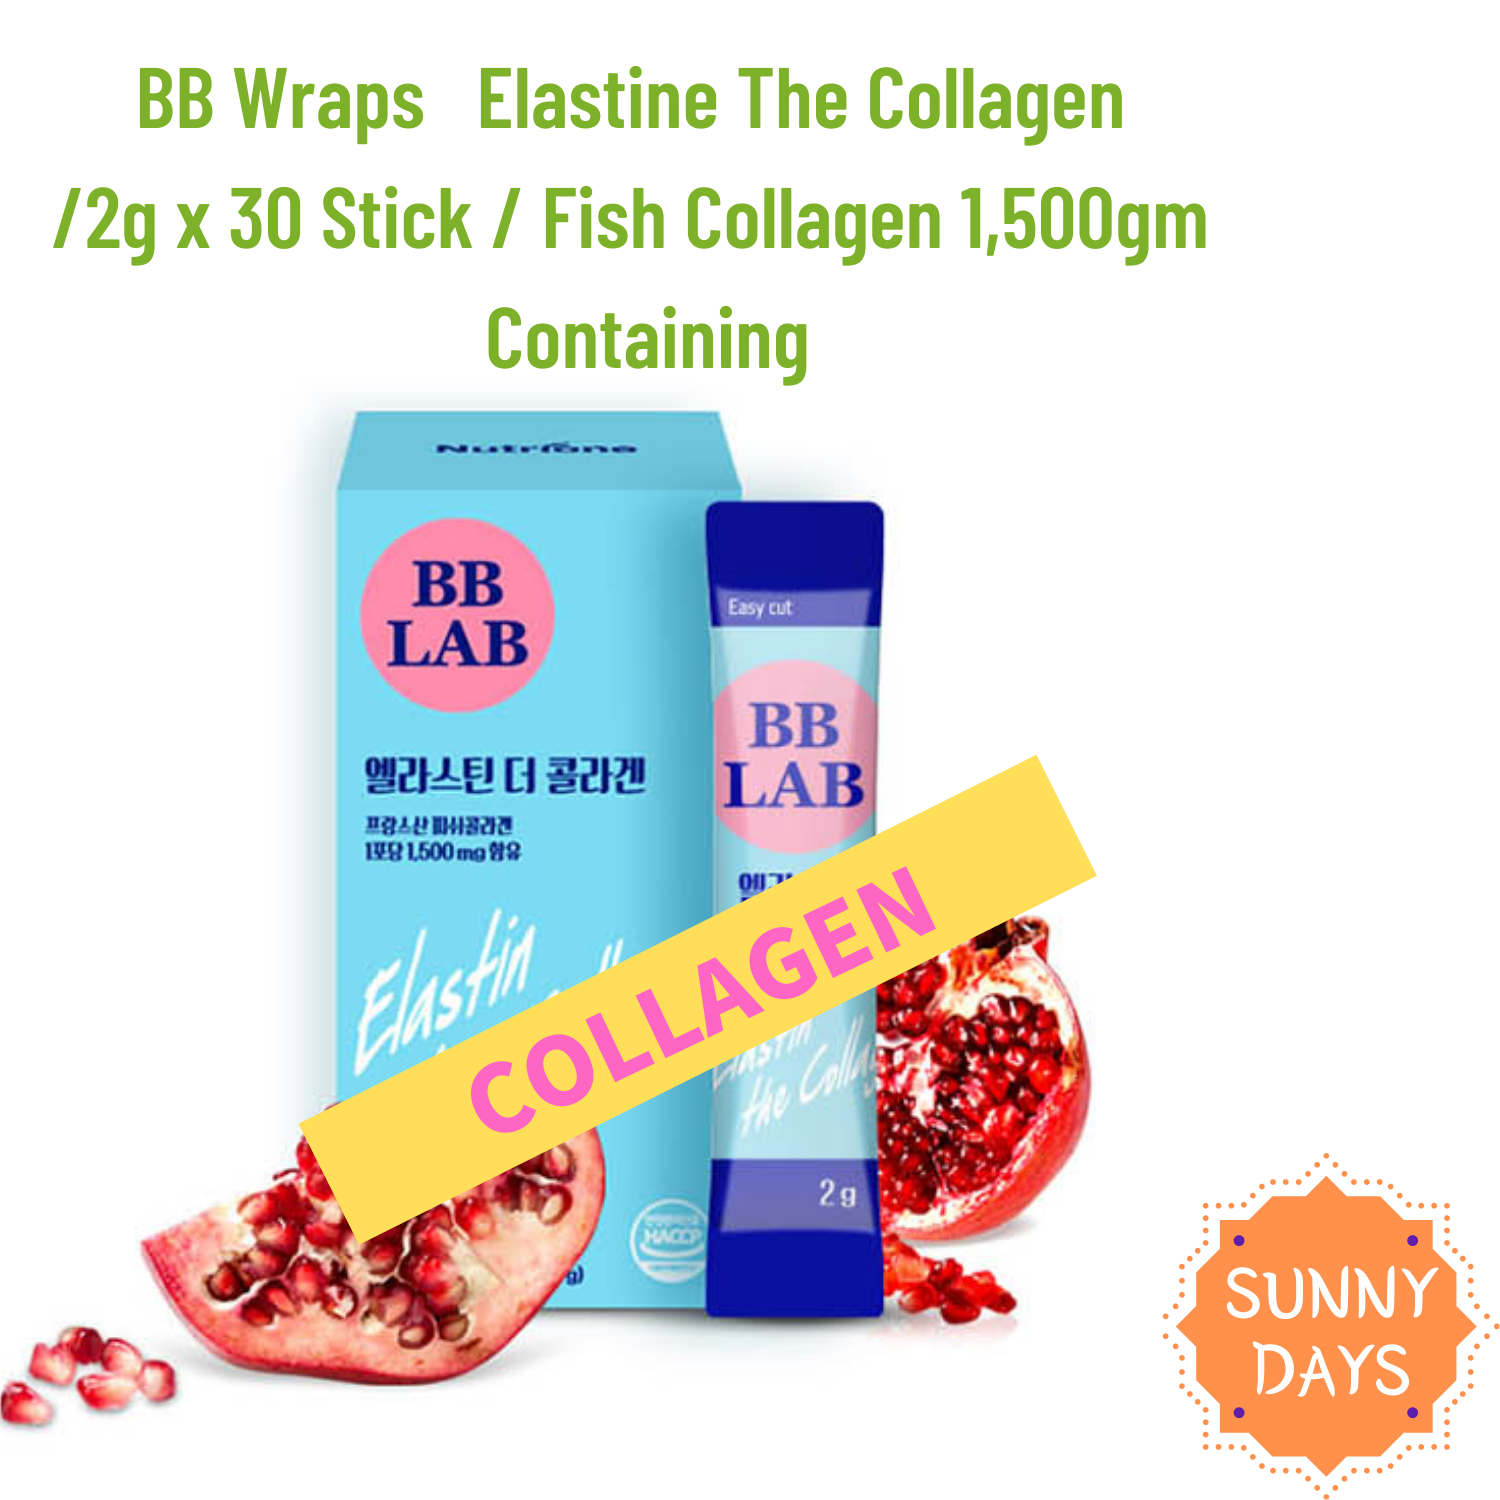 BB LAB Elastine The Collagen /2g x 30 Stick / Fish Collagen 1,500 gm ...